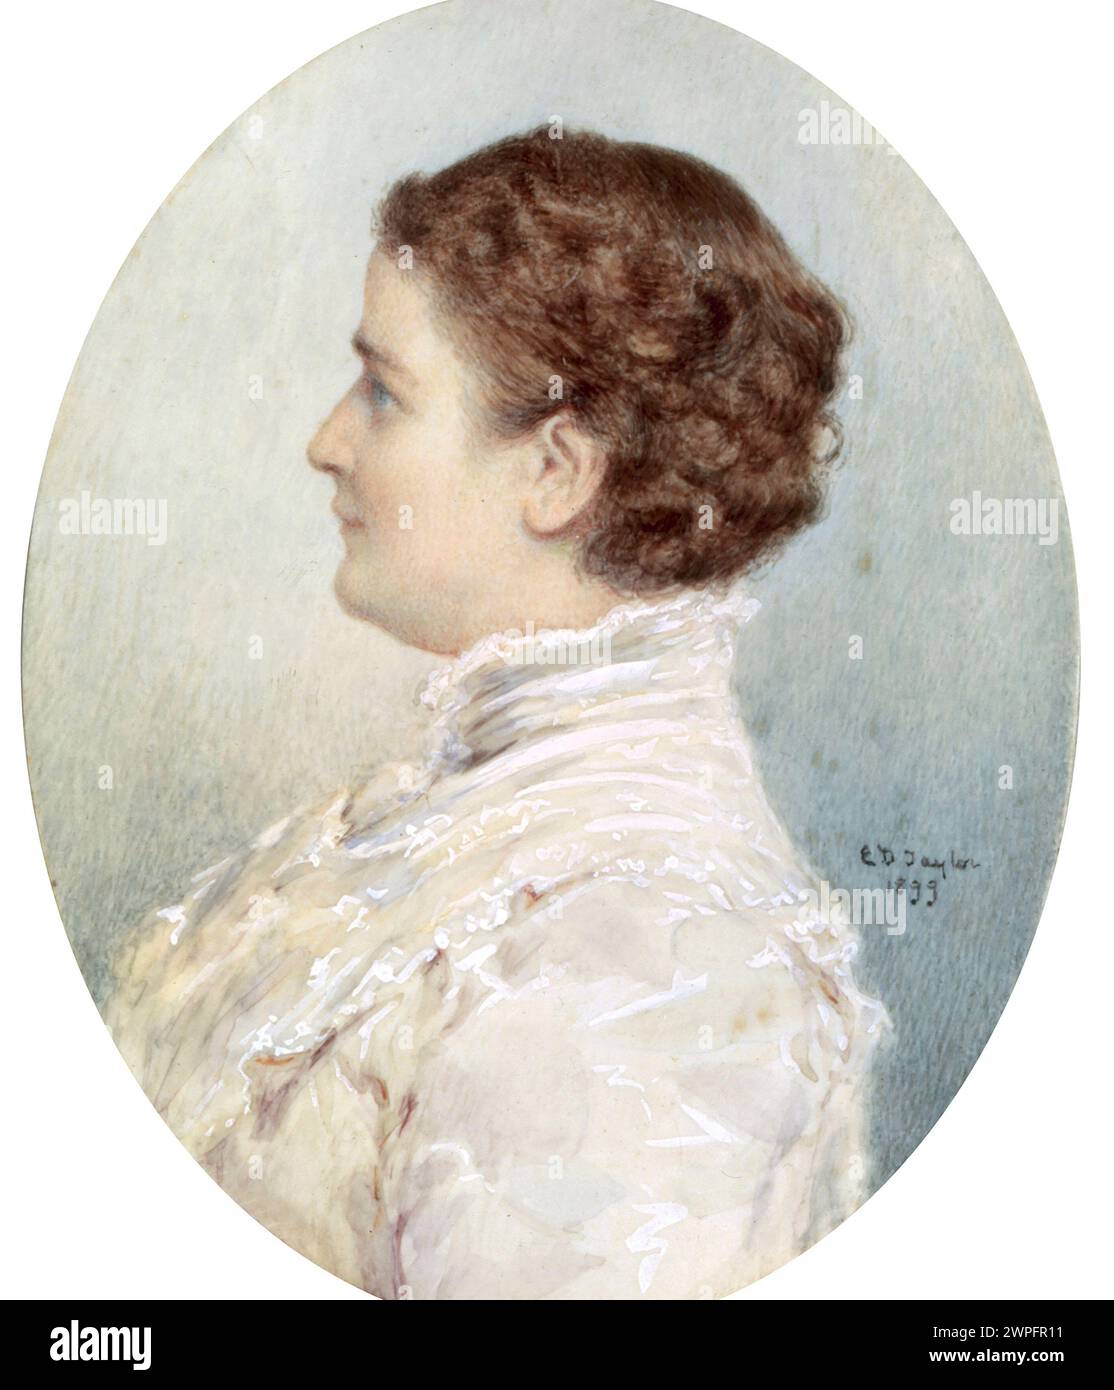 IDA SAXTON McKinley (1847-1907) première dame des États-Unis, épouse du président William McKinley Banque D'Images